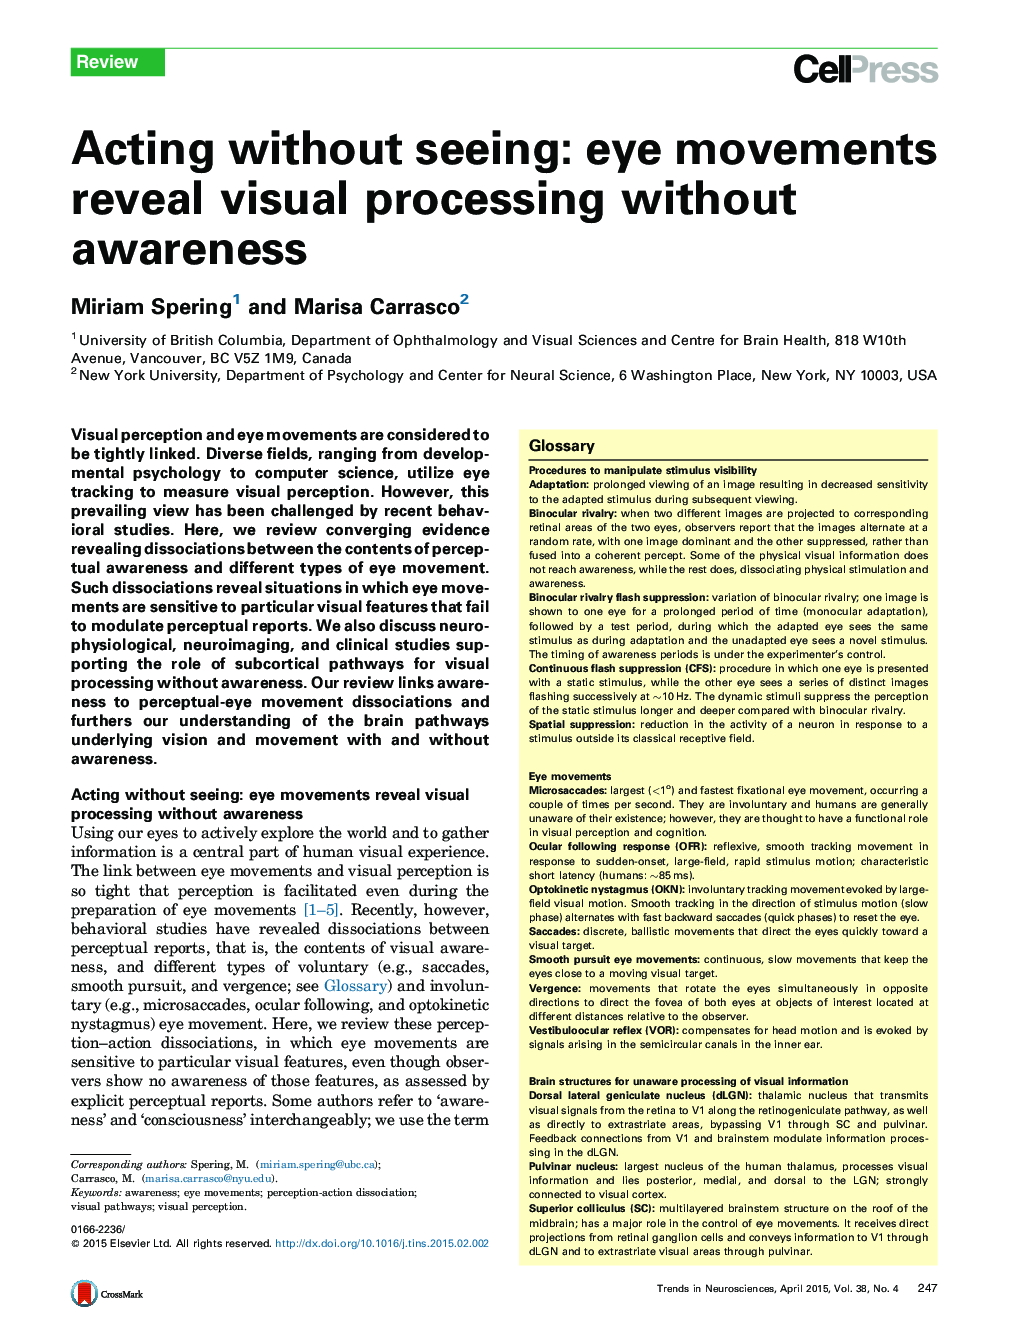 عمل بدون دیدن: حرکات چشم، پردازش تصویری بدون آگاهی را نشان می دهد 